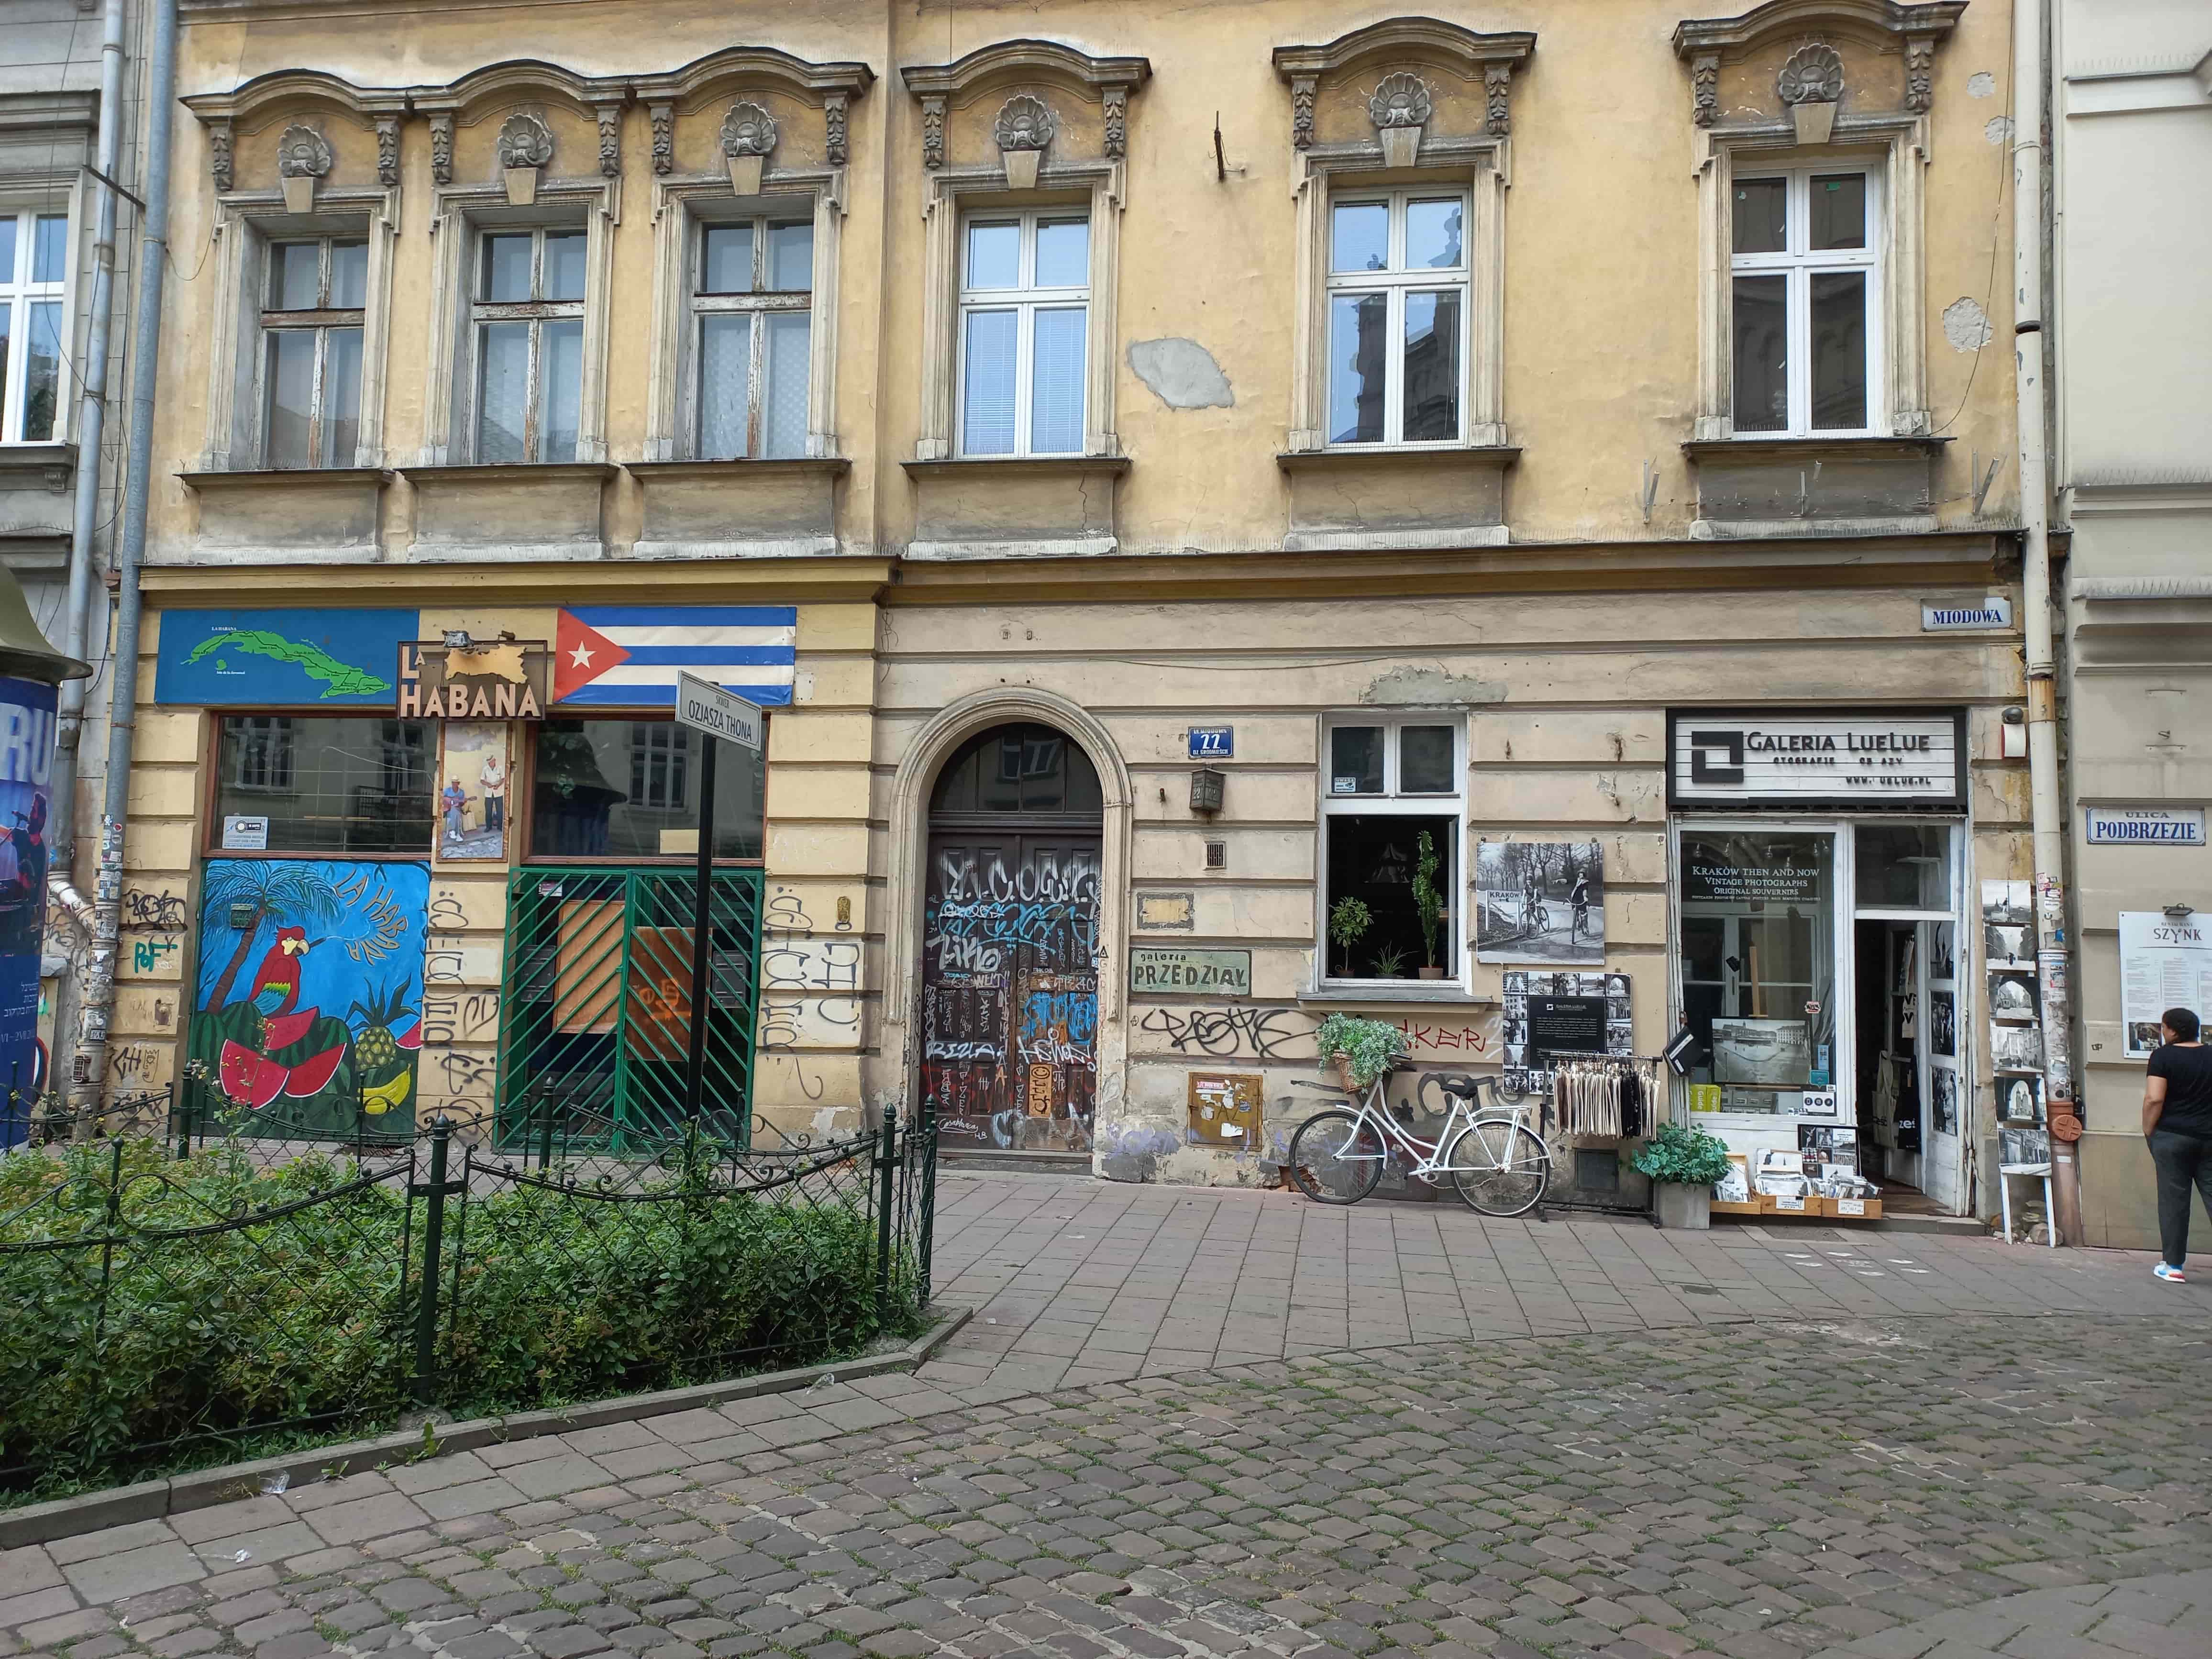 Több ingatlant renováltak, rengeteg étterem, bár és kávézó, söröző, valamint könyvesbolt és galéria működik a krakkói zsidónegyedben.